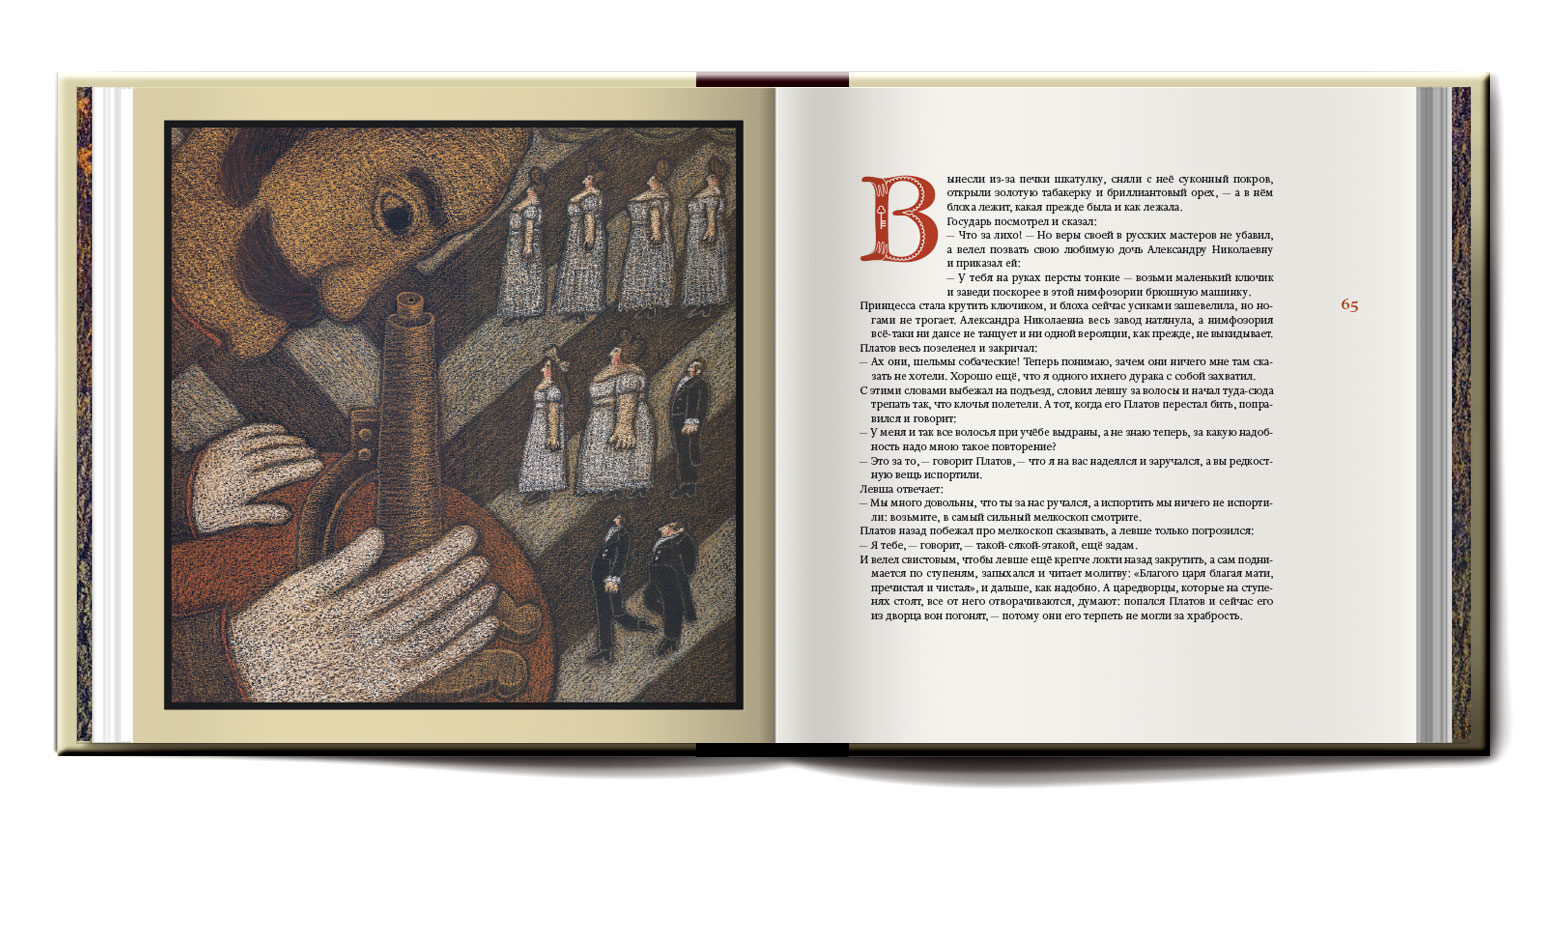 Книга марка Яковлевича блоха описание